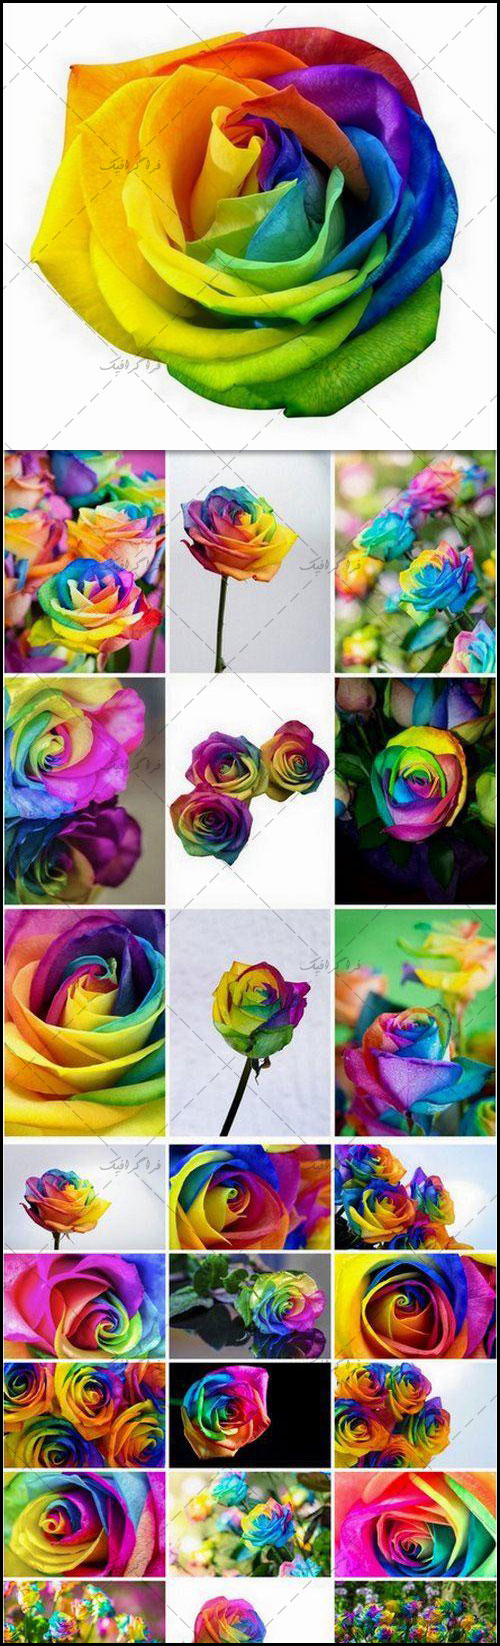 دانلود تصاویر استوک گل های رز رنگارنگ